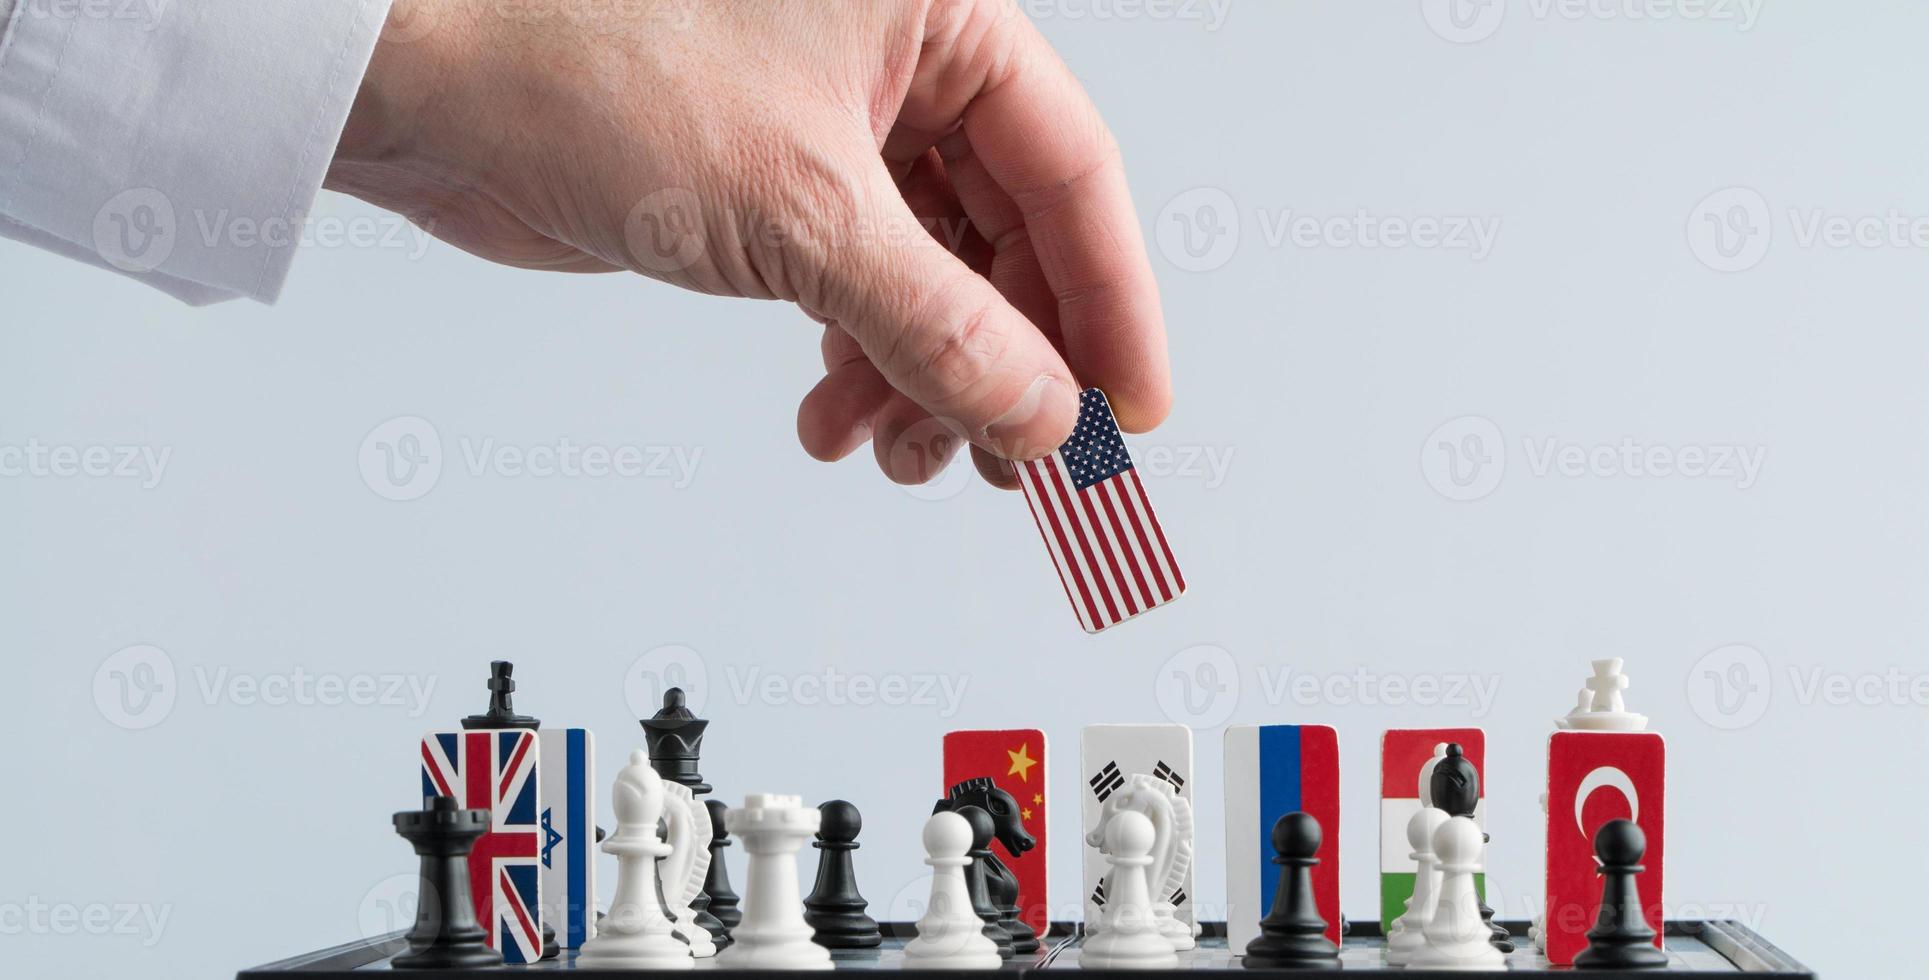 la main du politicien déplace une pièce d'échecs avec un drapeau. photo conceptuelle d'un jeu politique. mouvement de représailles usa